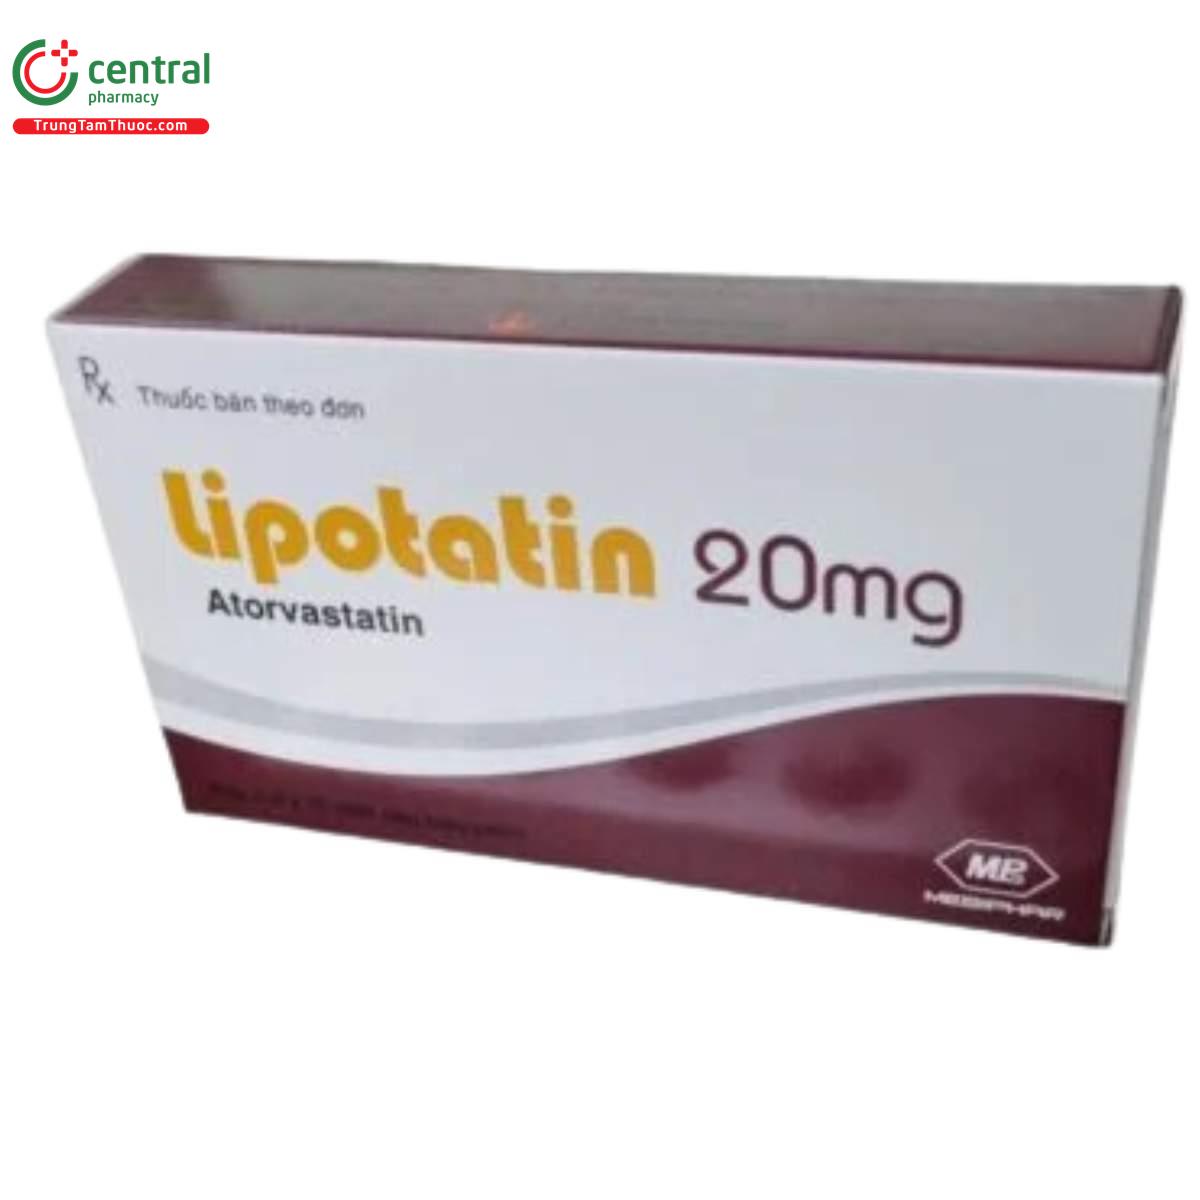 lipotatin 1 T8088